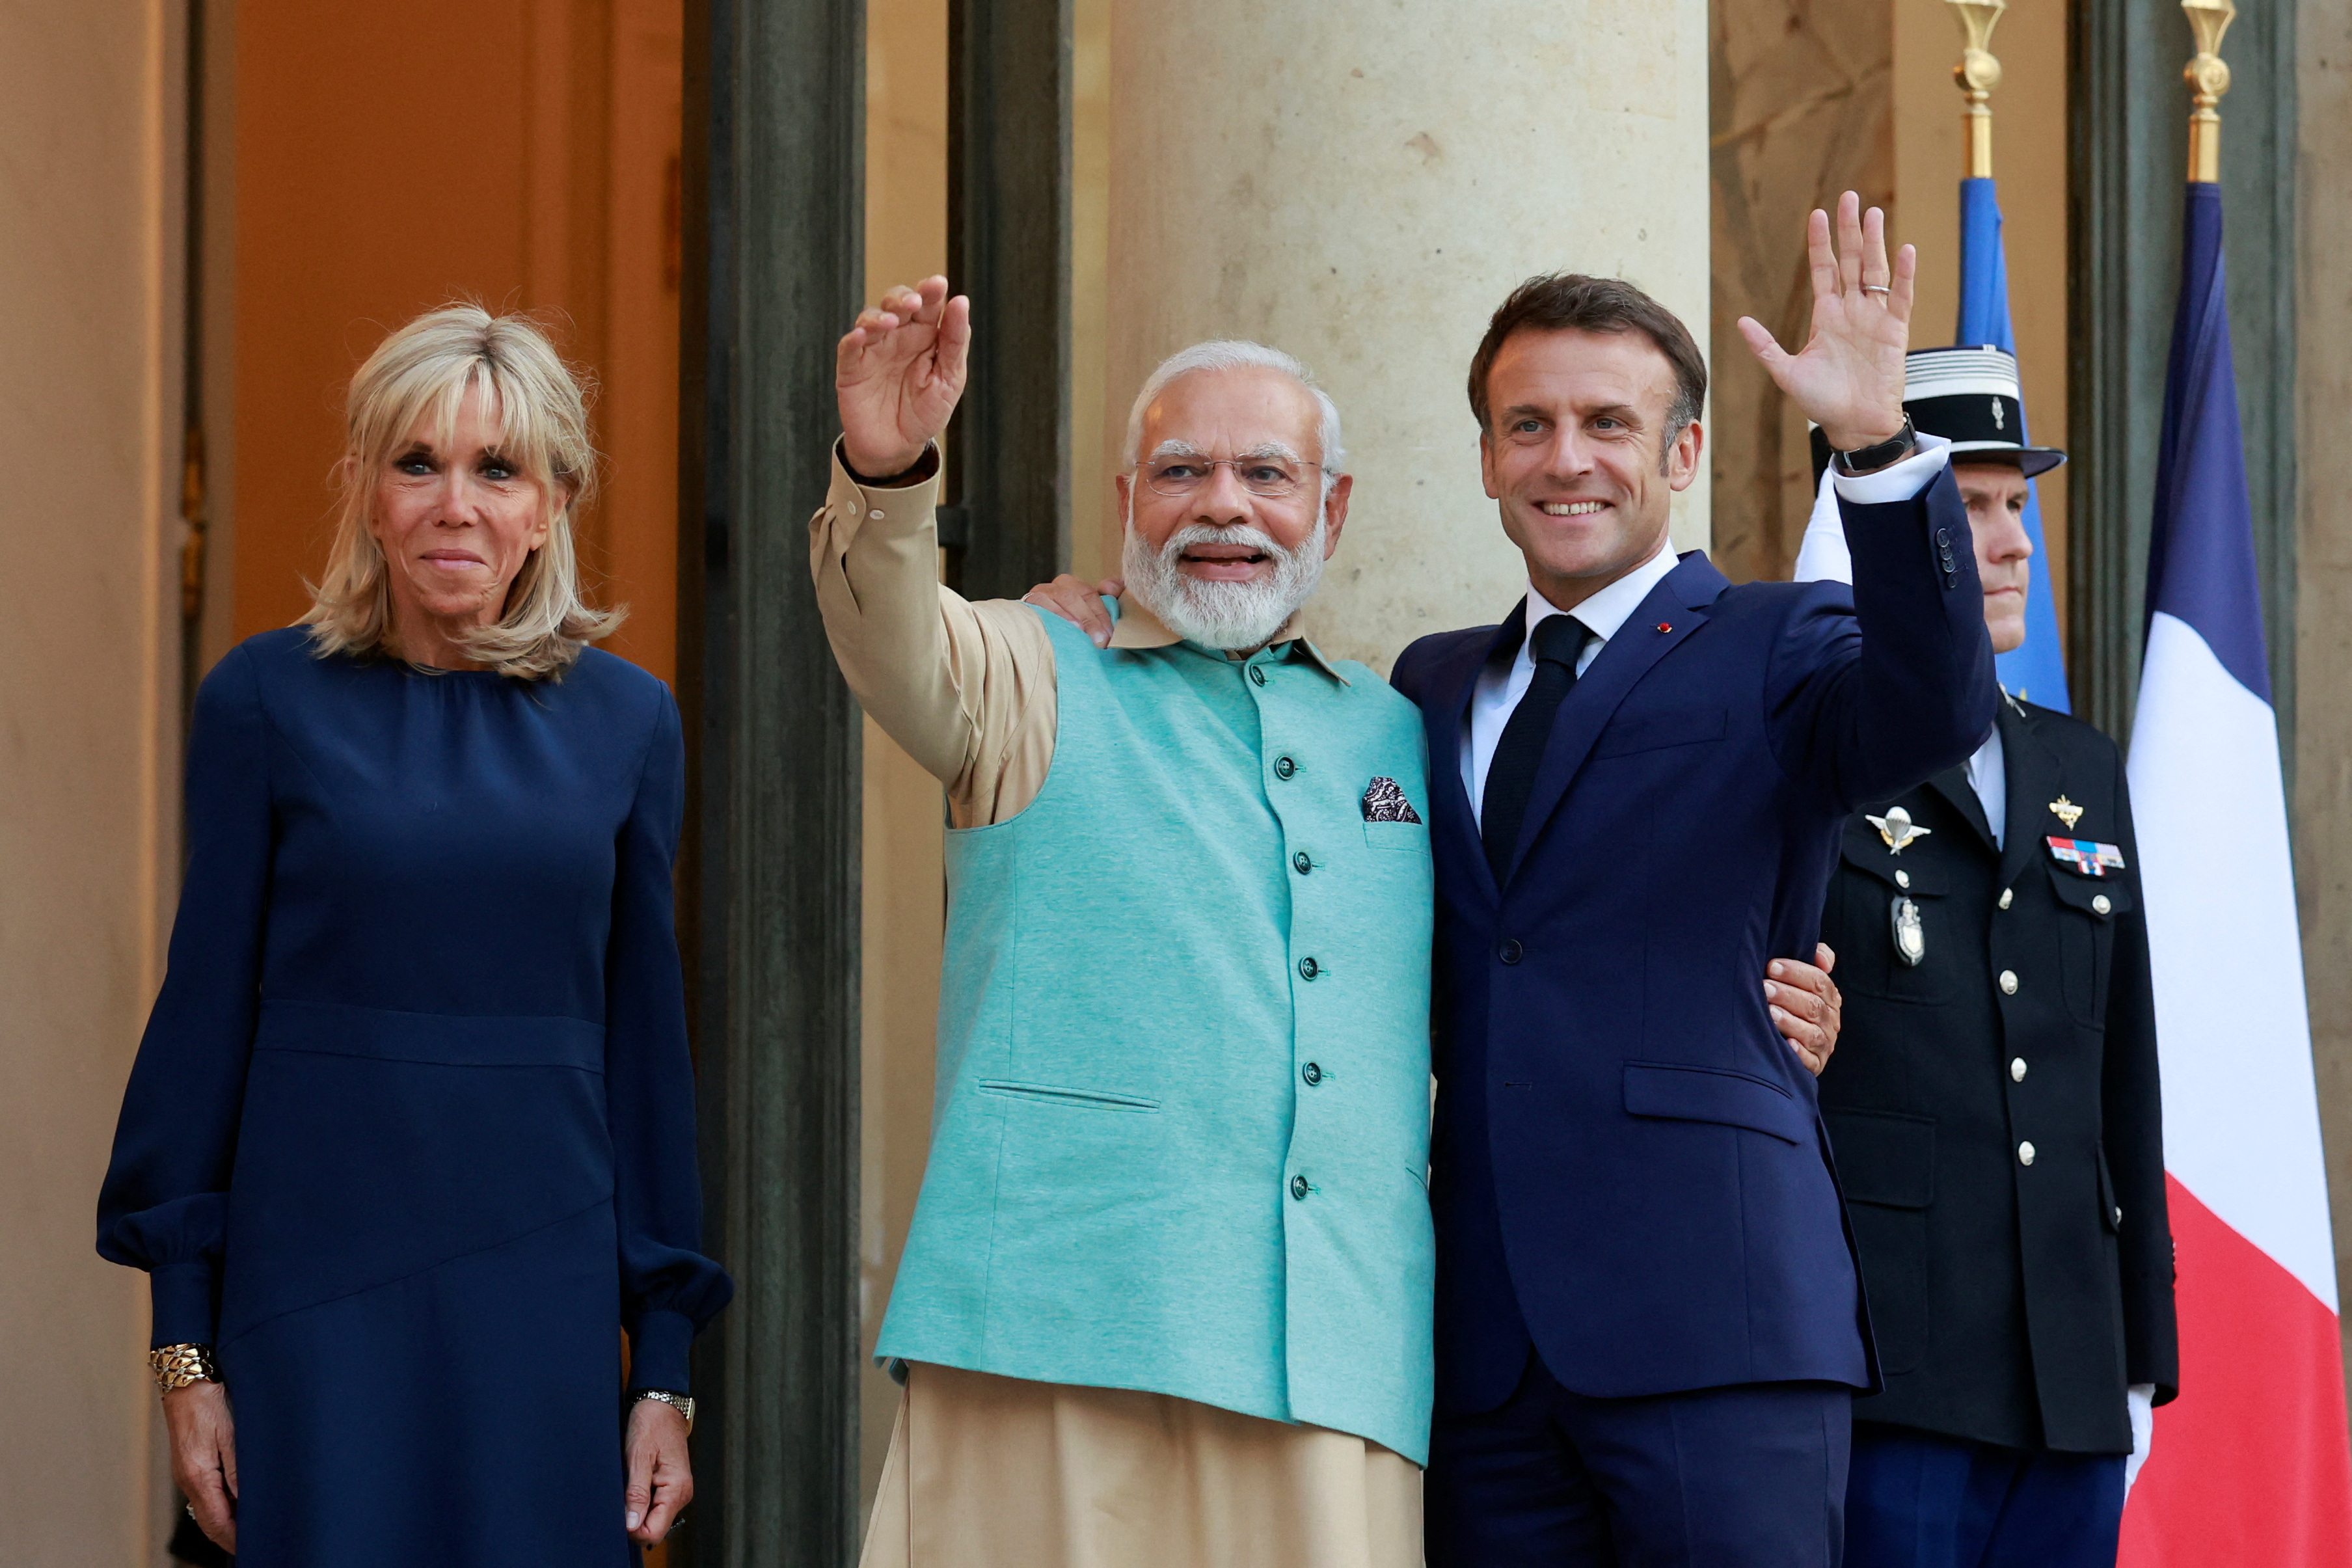 Inde/France : un partenariat très stratégique qui s'inscrit dans le temps très long